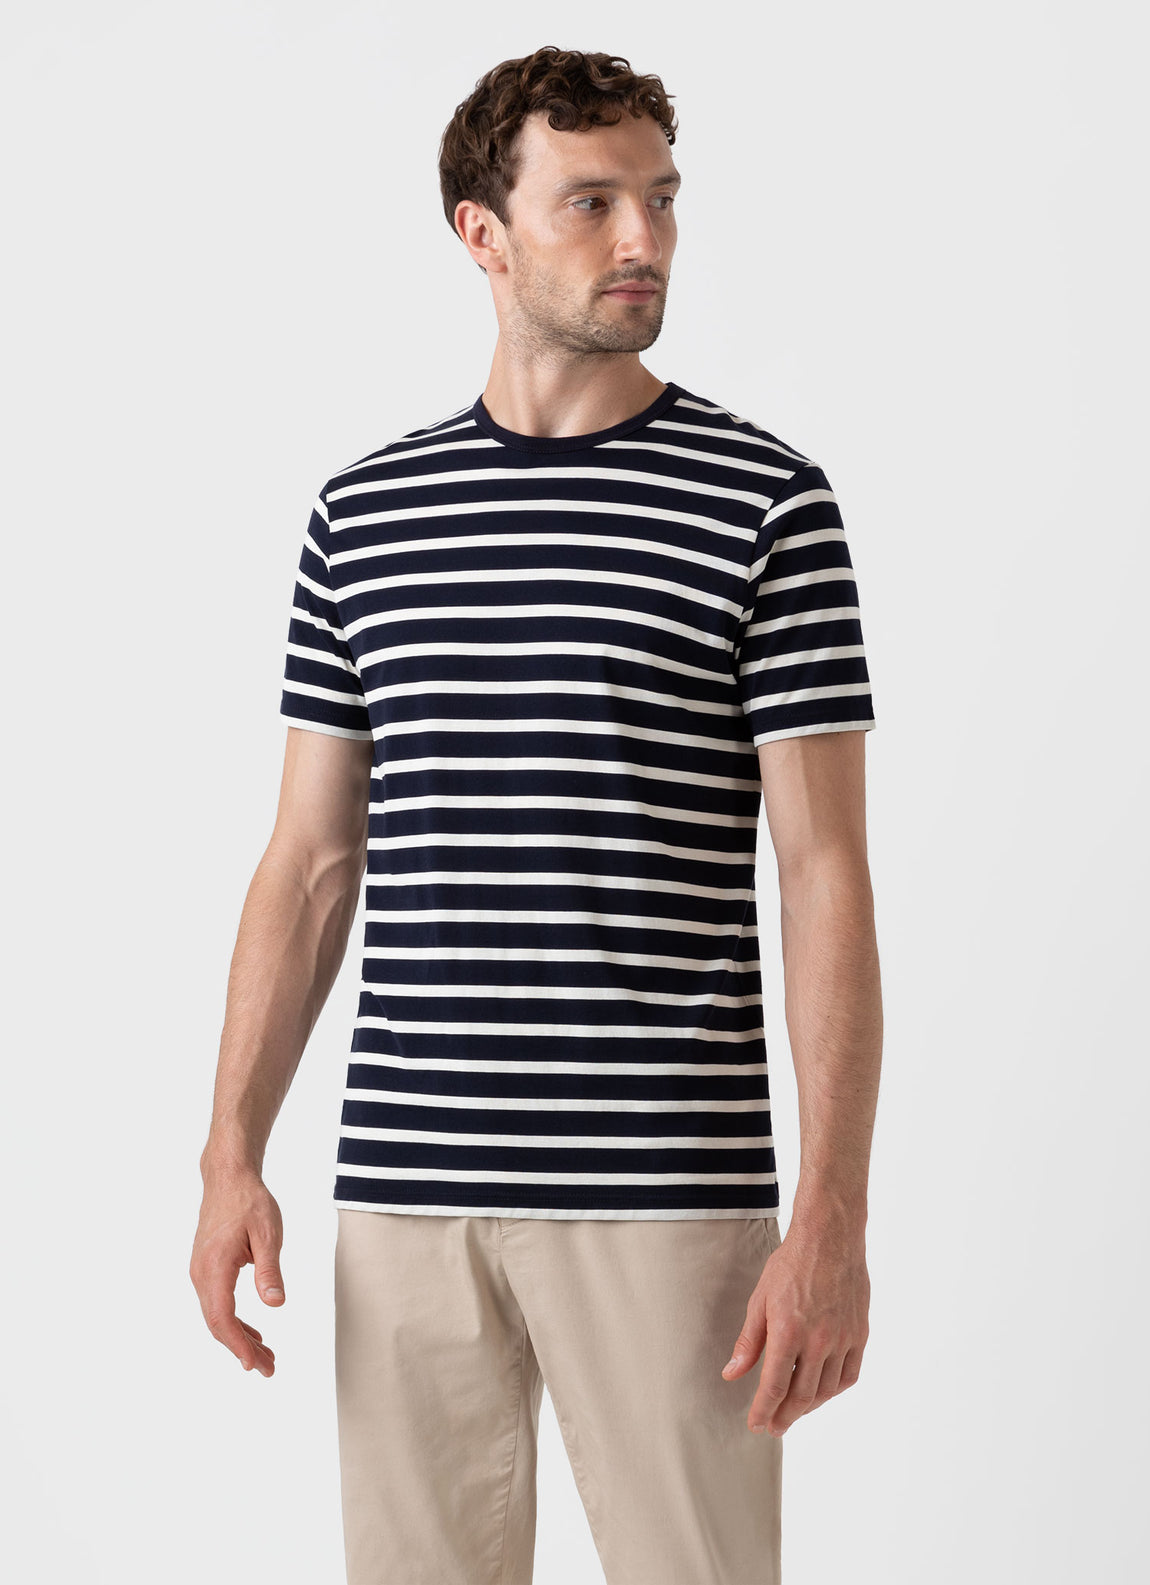 Arab alkohol Vandre Men's Classic Cotton Breton Stripe T-shirt in Navy/Ecru | Sunspel